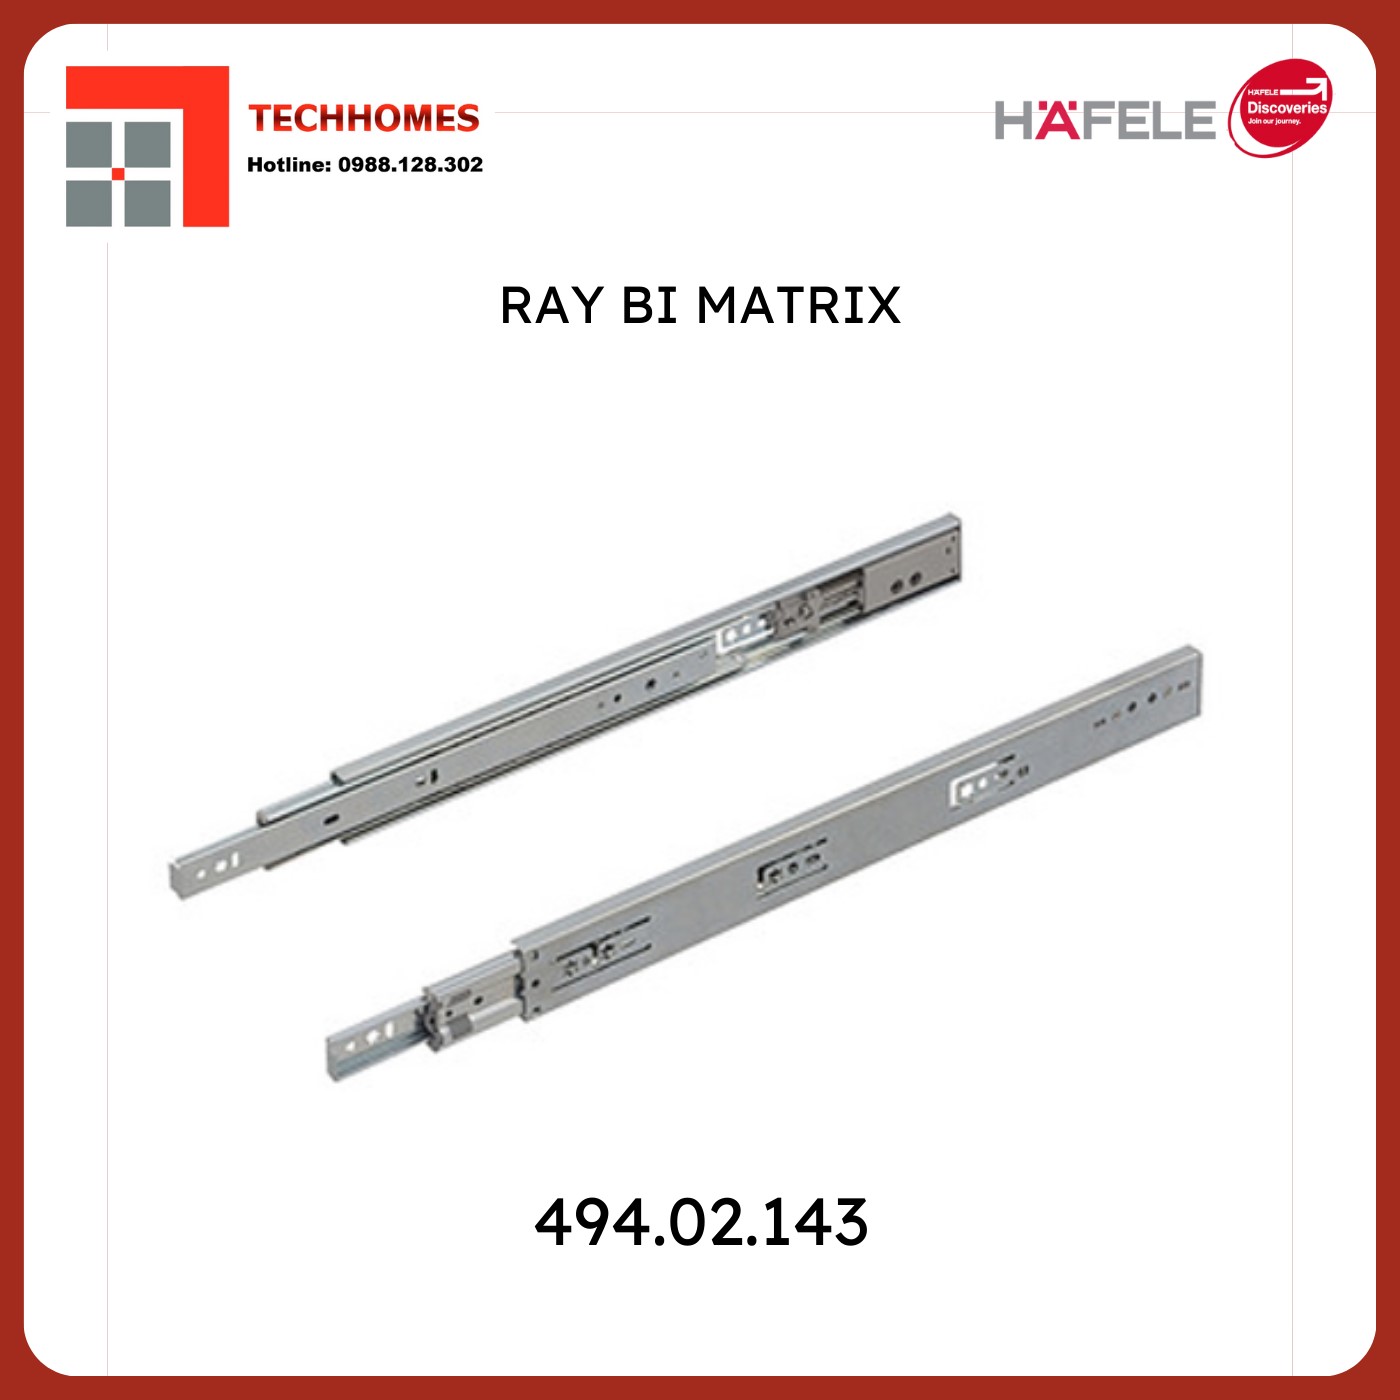 RAY BI 3 TẦNG HAFELE 20KG - 494.02.141